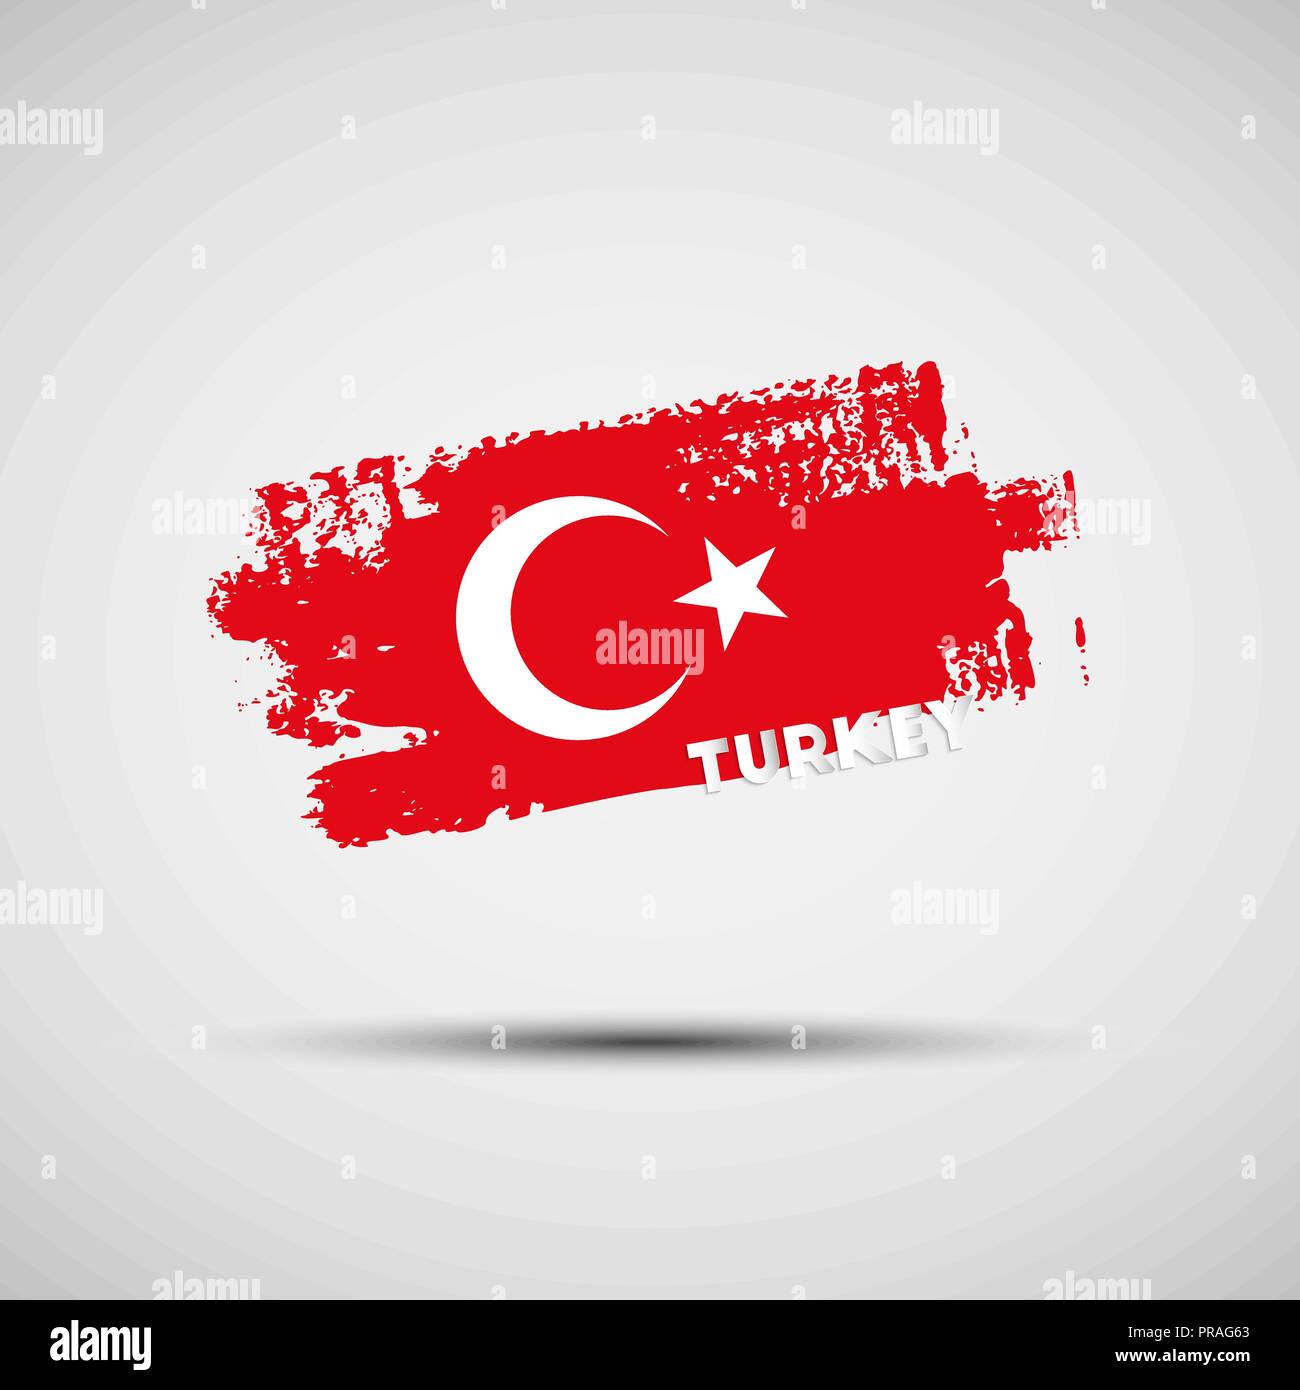 Flagge der Türkei. Vector Illustration von Grunge Pinselstrich mit Türkischen nationalflagge Farben für Ihre Grafik- und Webdesign Stock Vektor